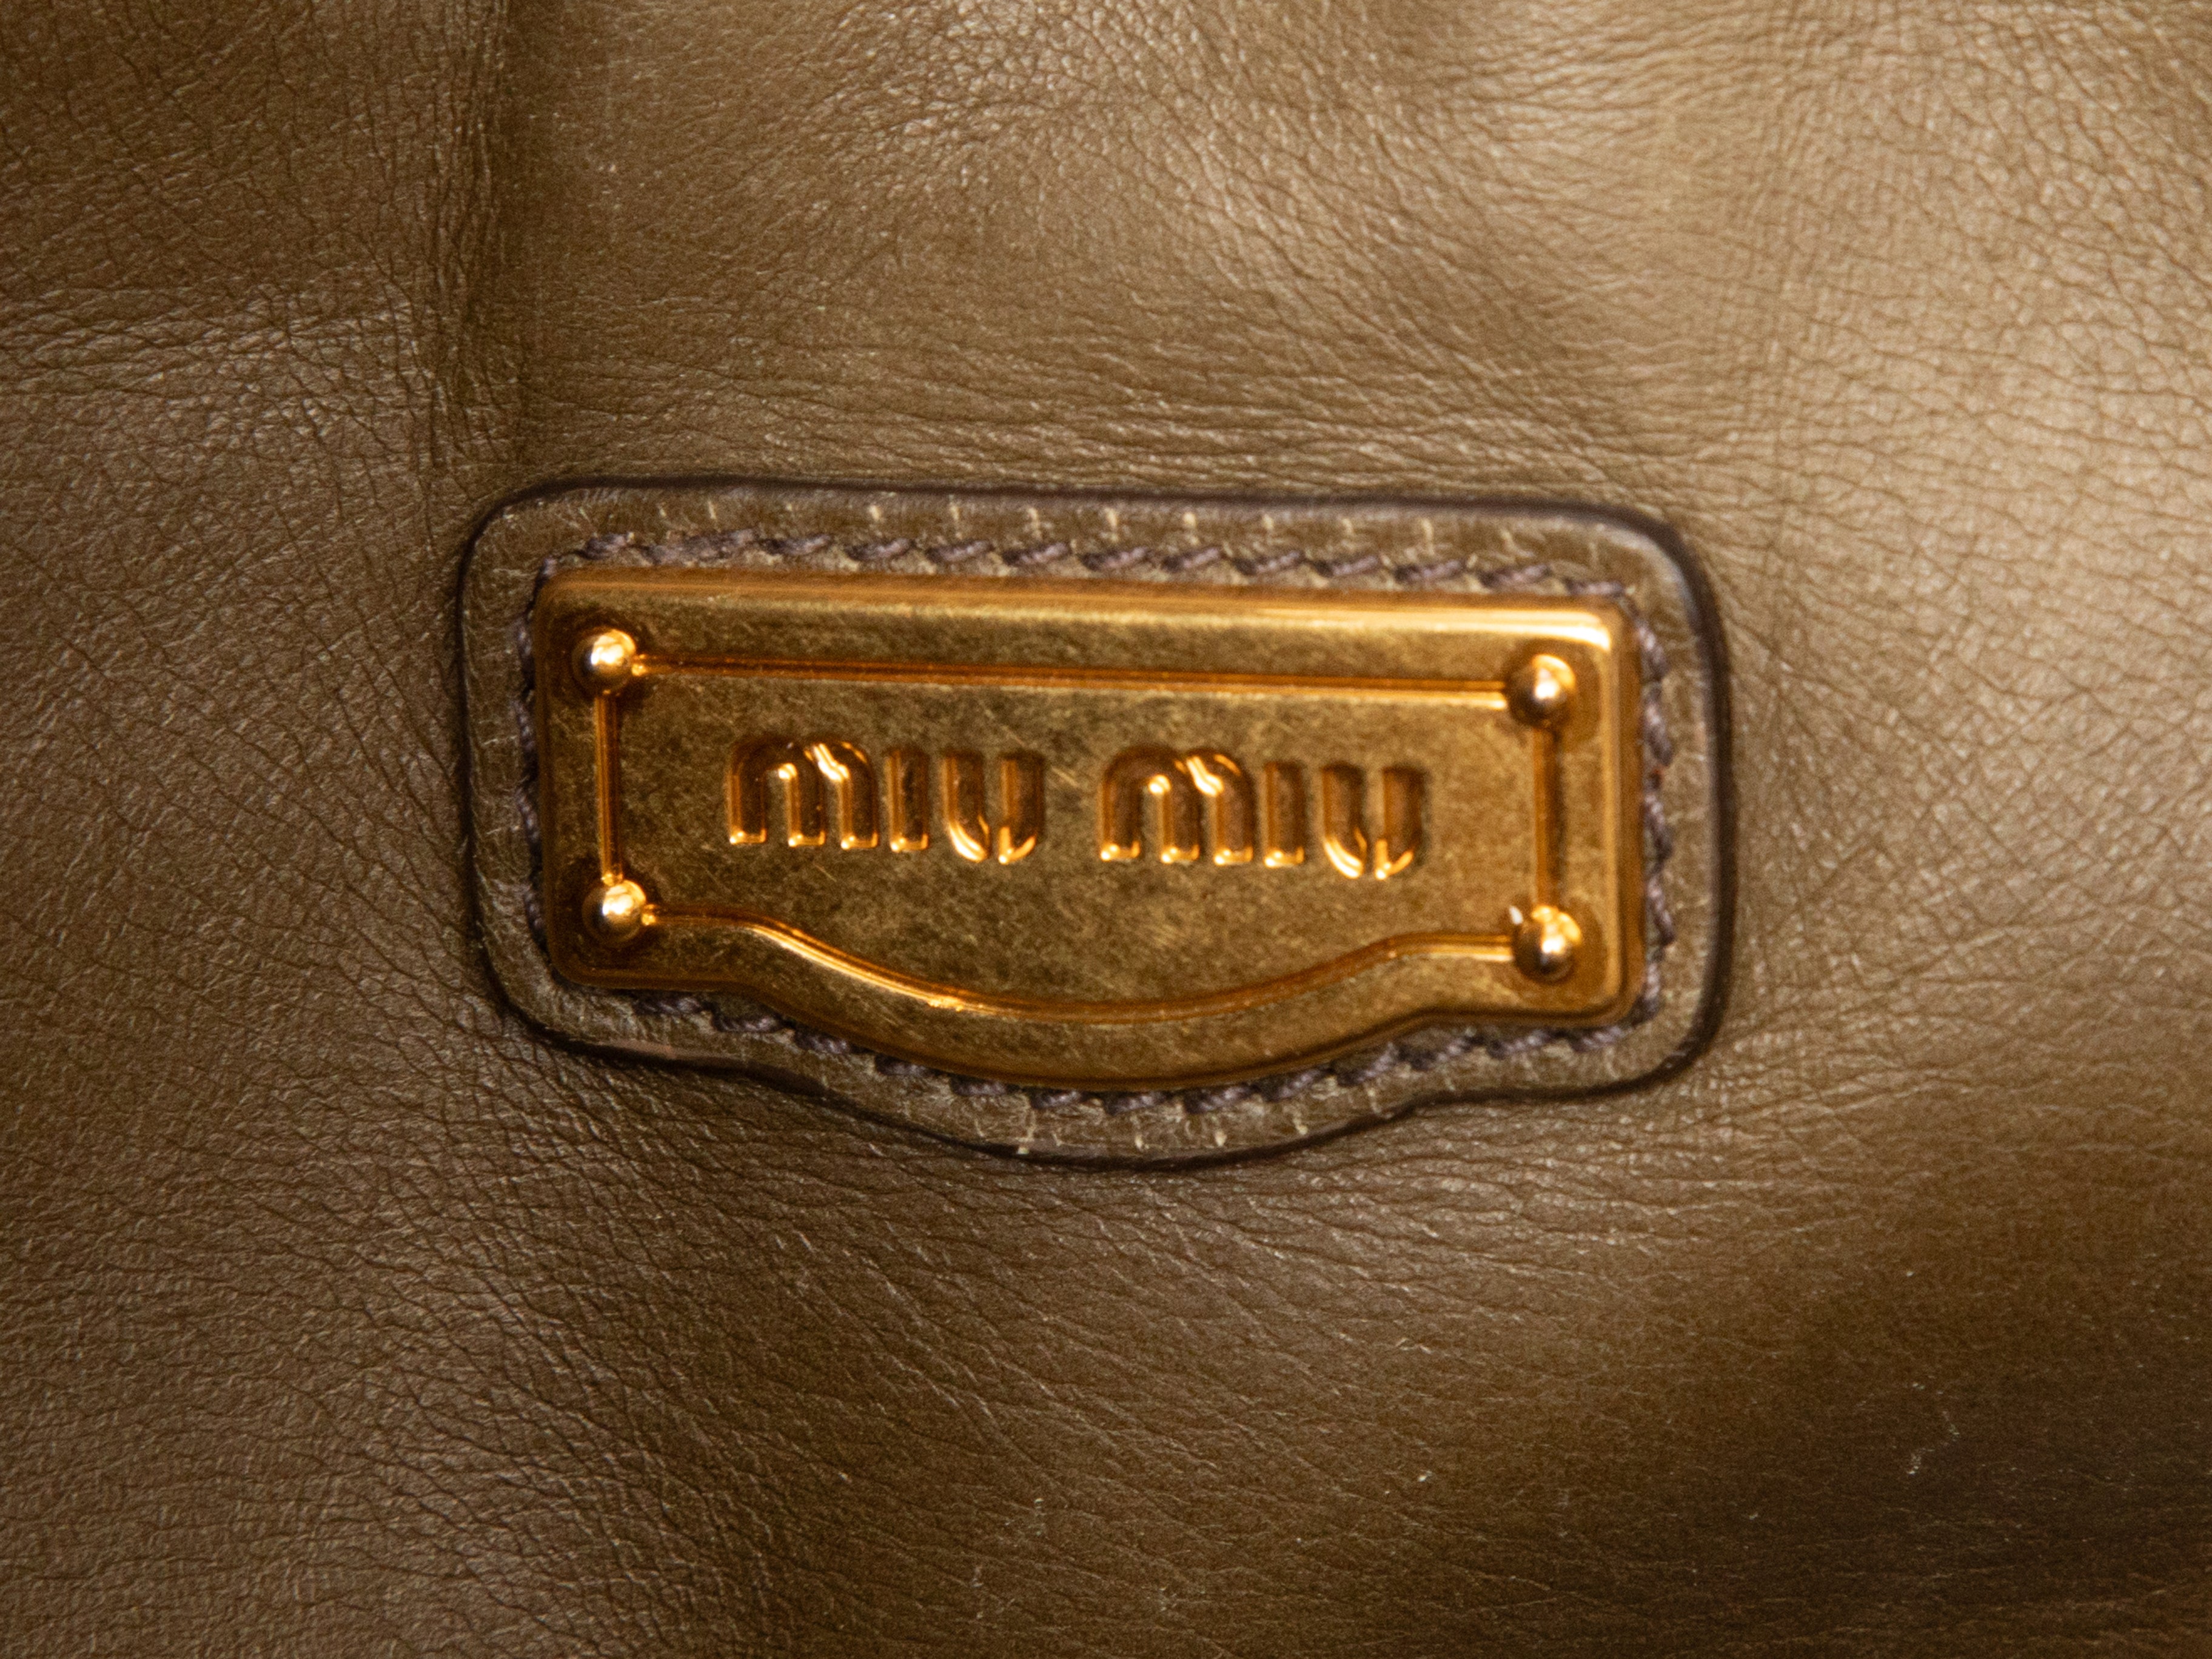 Olive Miu Miu Leather Tote Bag – Designer Revival